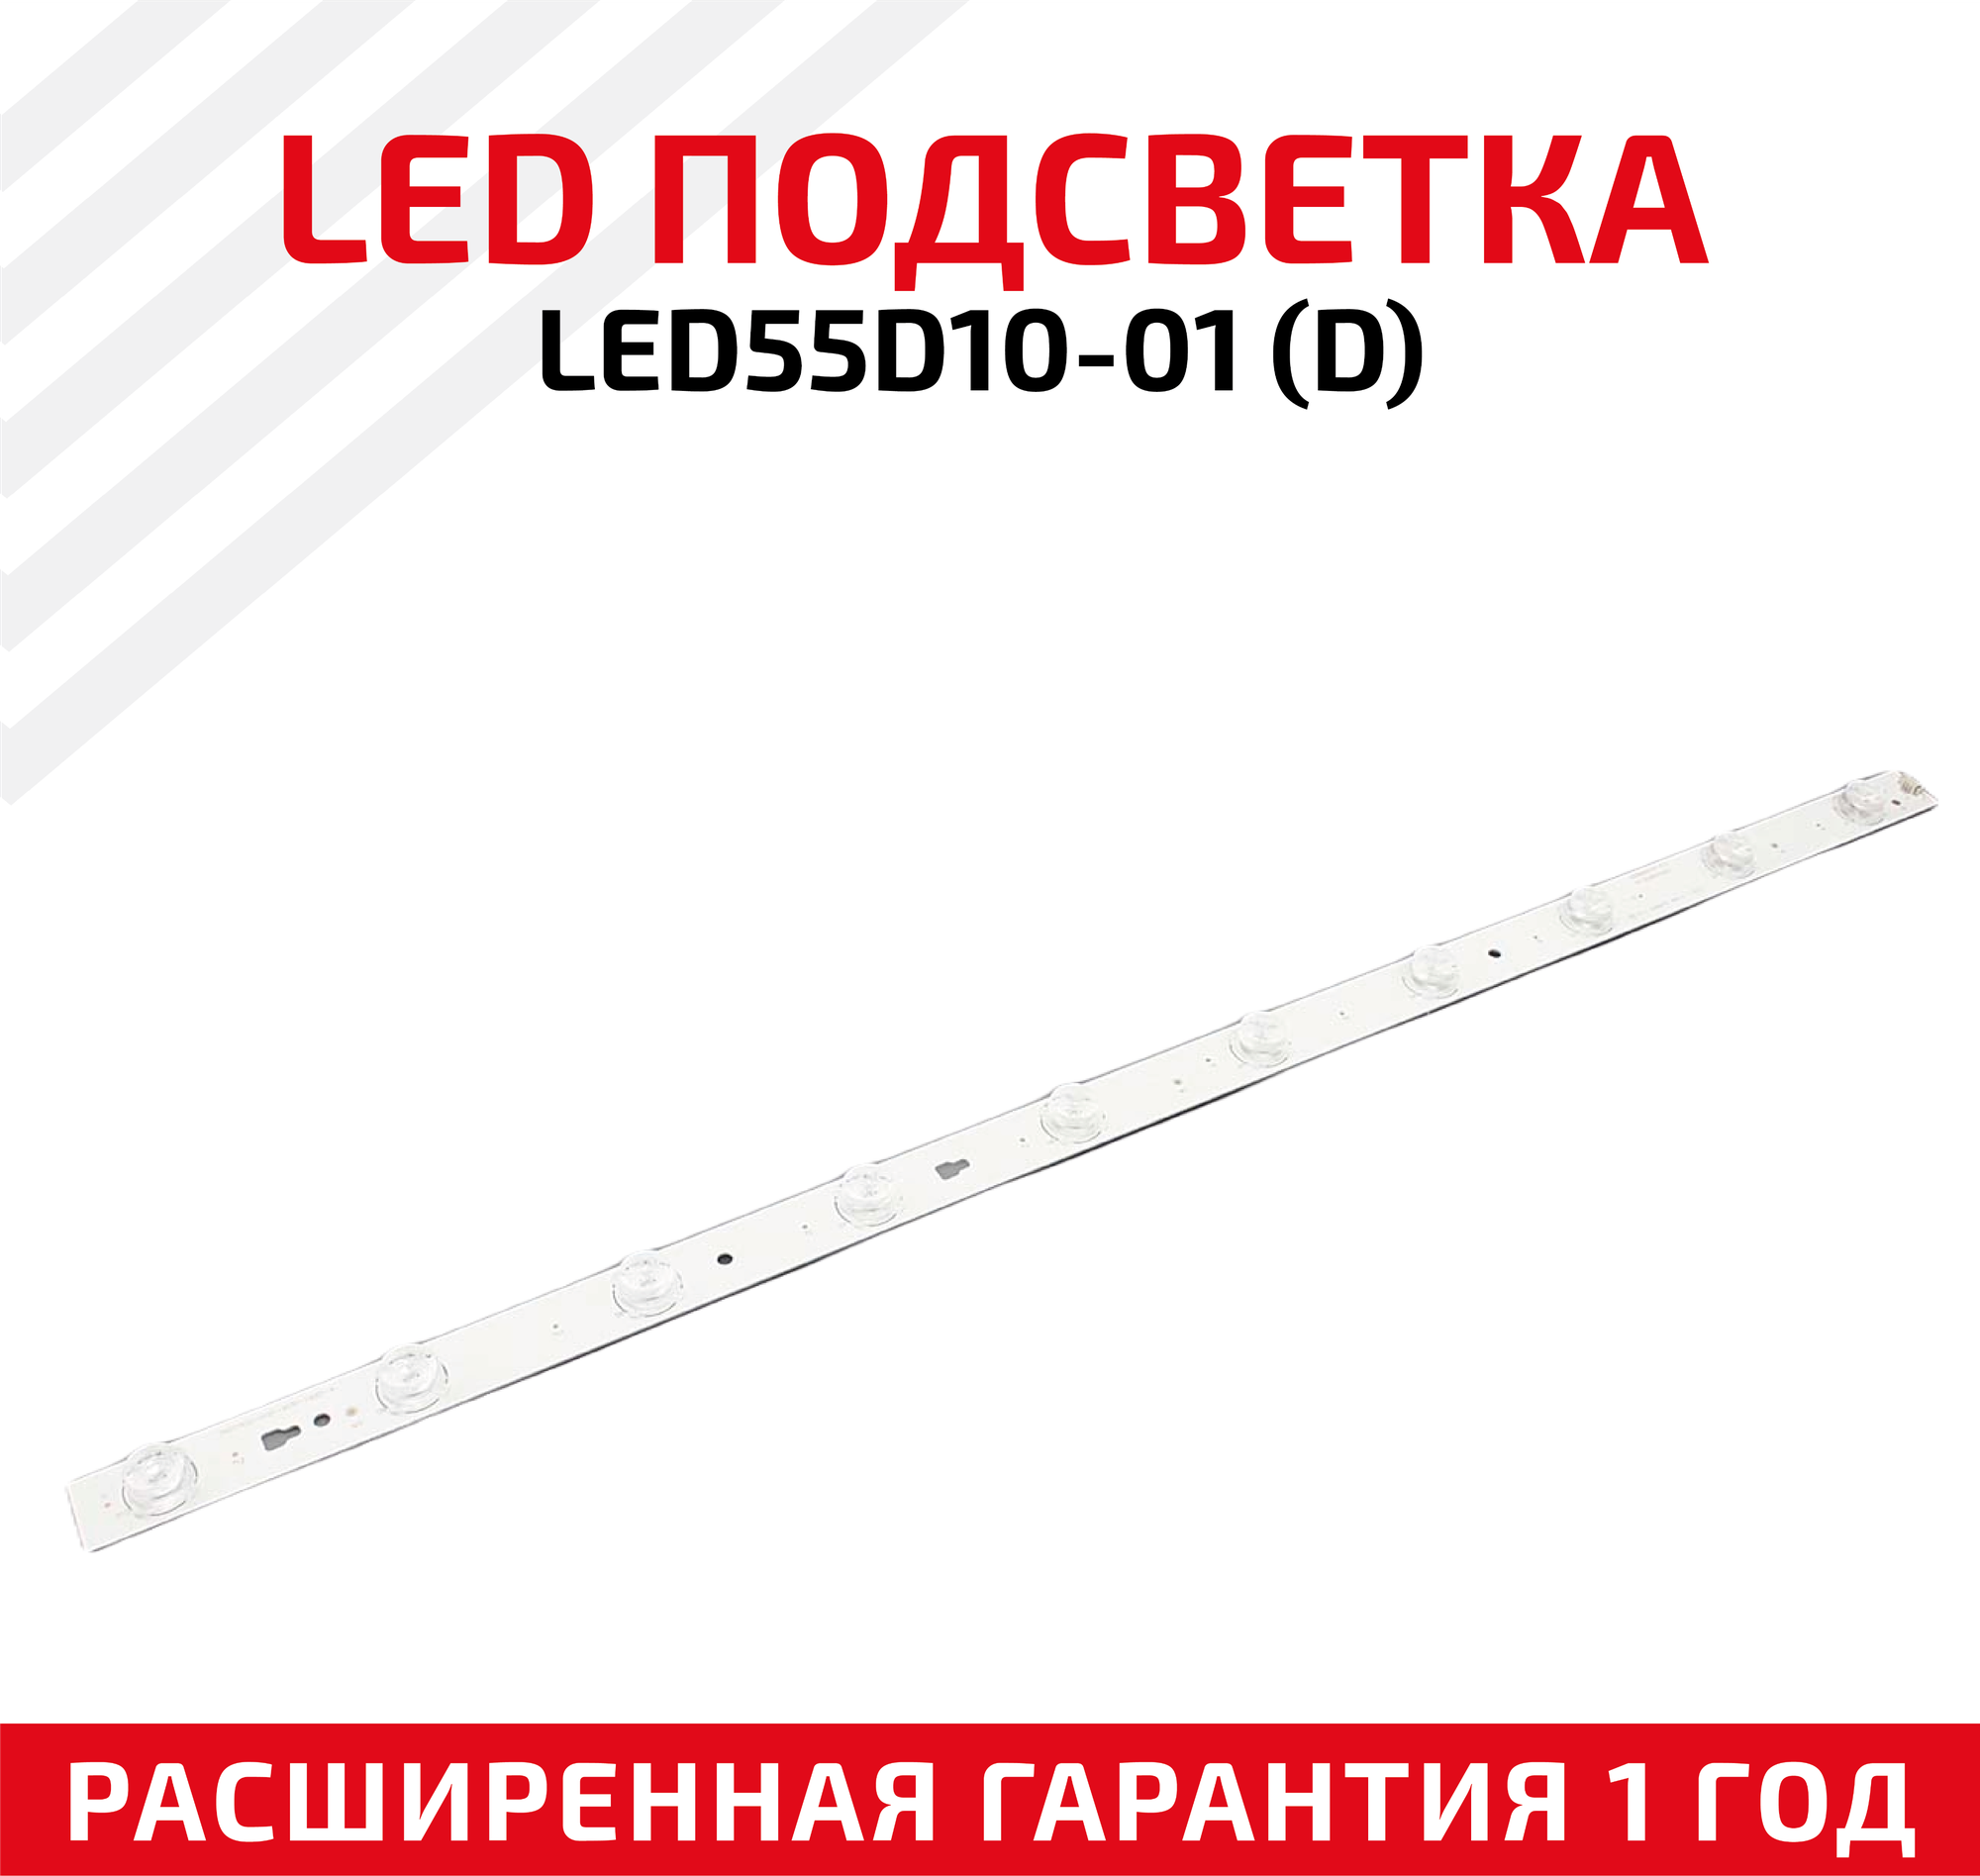 LED подсветка (светодиодная планка) для телевизора LED55D10-01